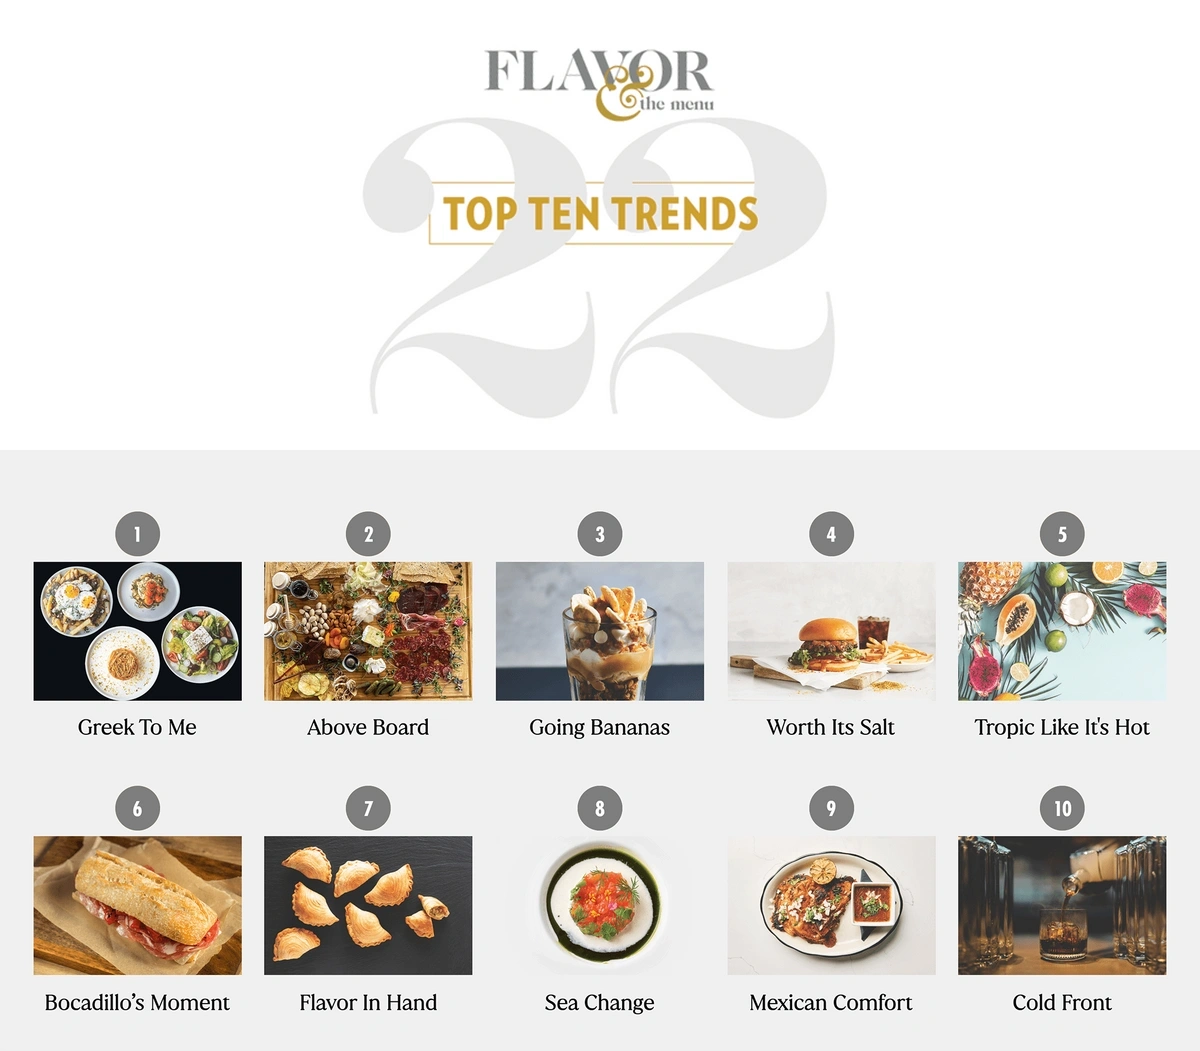 flavor-top-10-trends-min.webp